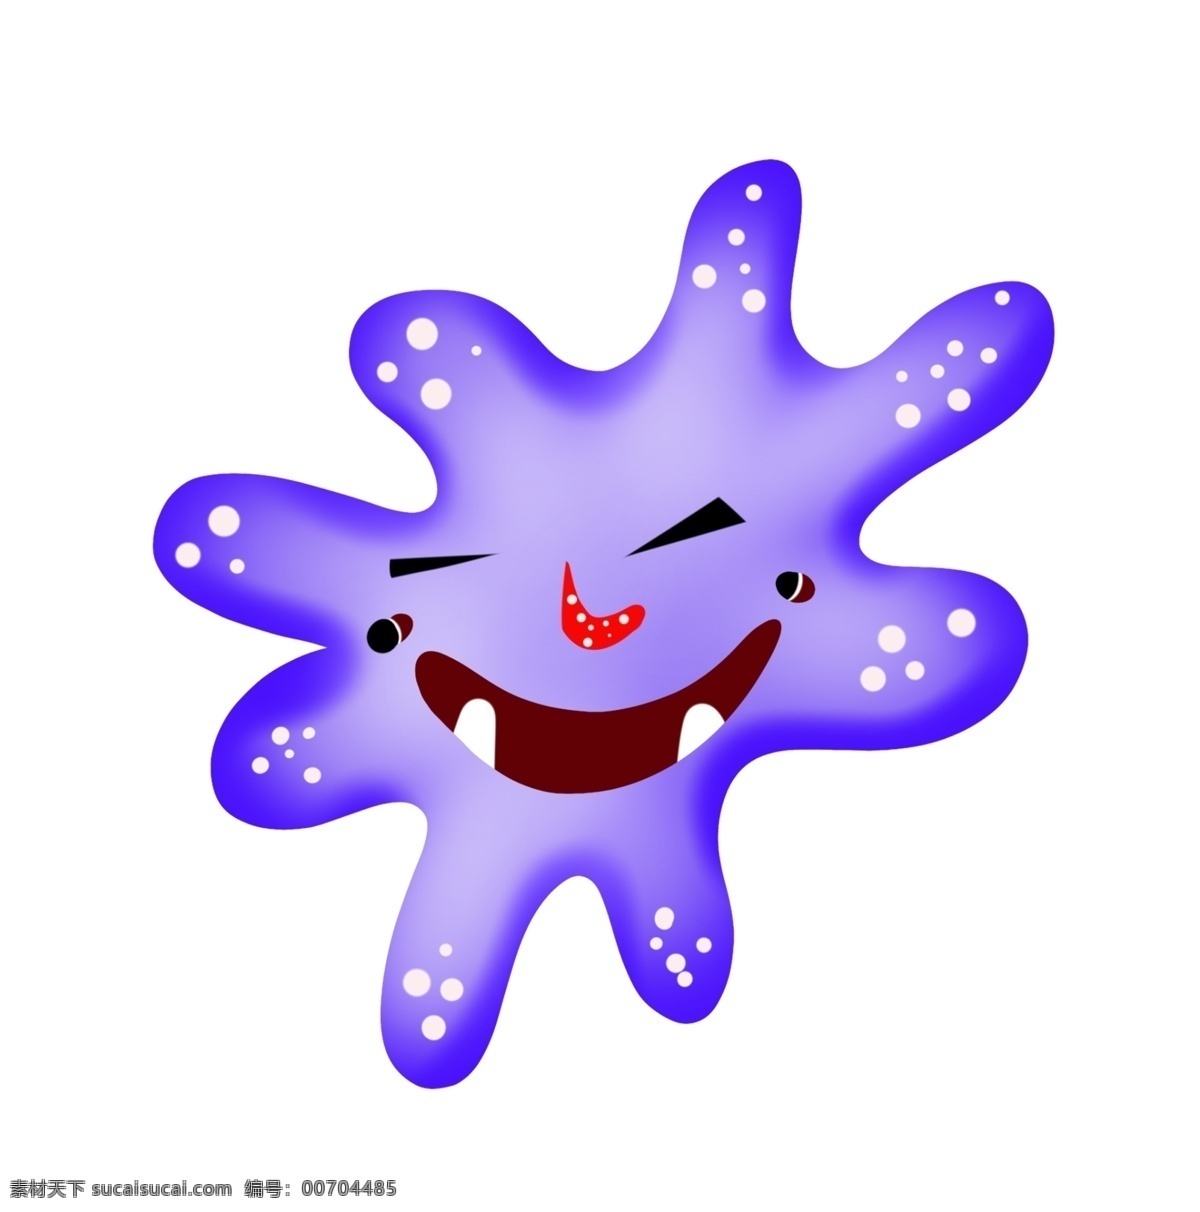 蓝色 细菌 卡通 插画 蓝色的细菌 卡通插画 细菌插画 病菌 细胞膜 细胞质 核糖体 原核生物